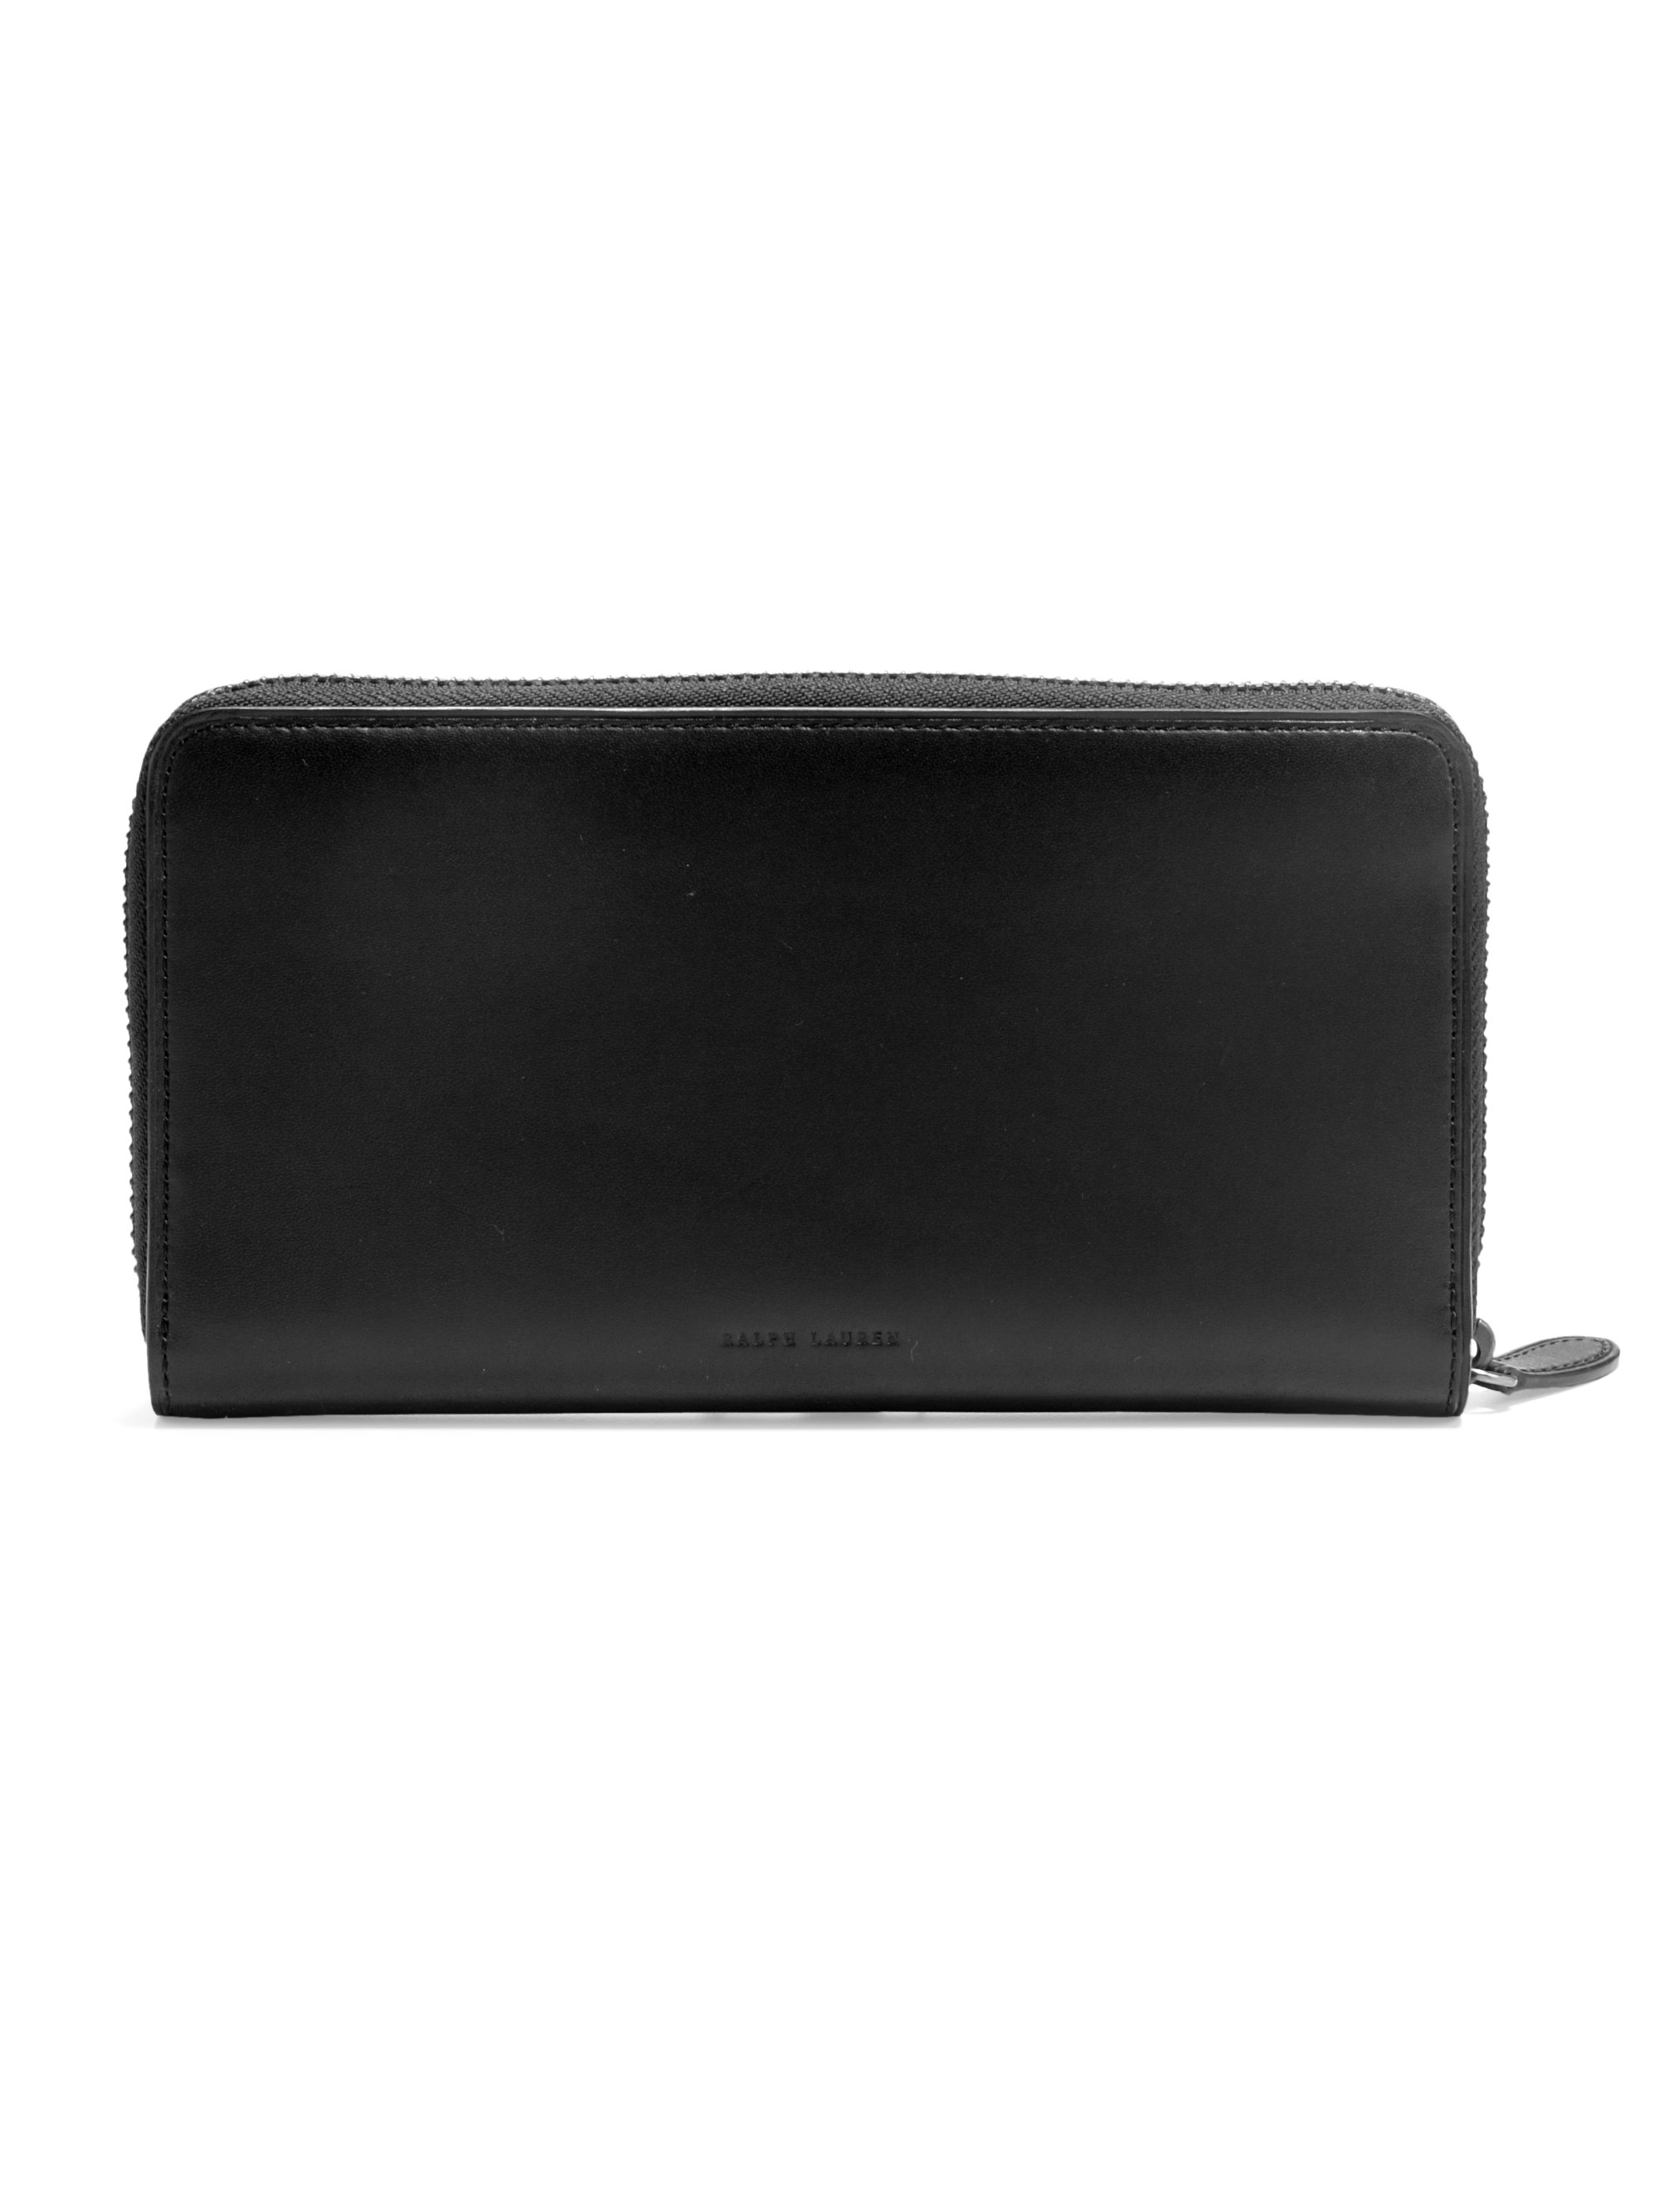 Lyst - Ralph Lauren Leather Zip Around Travel Wallet in Black for Men